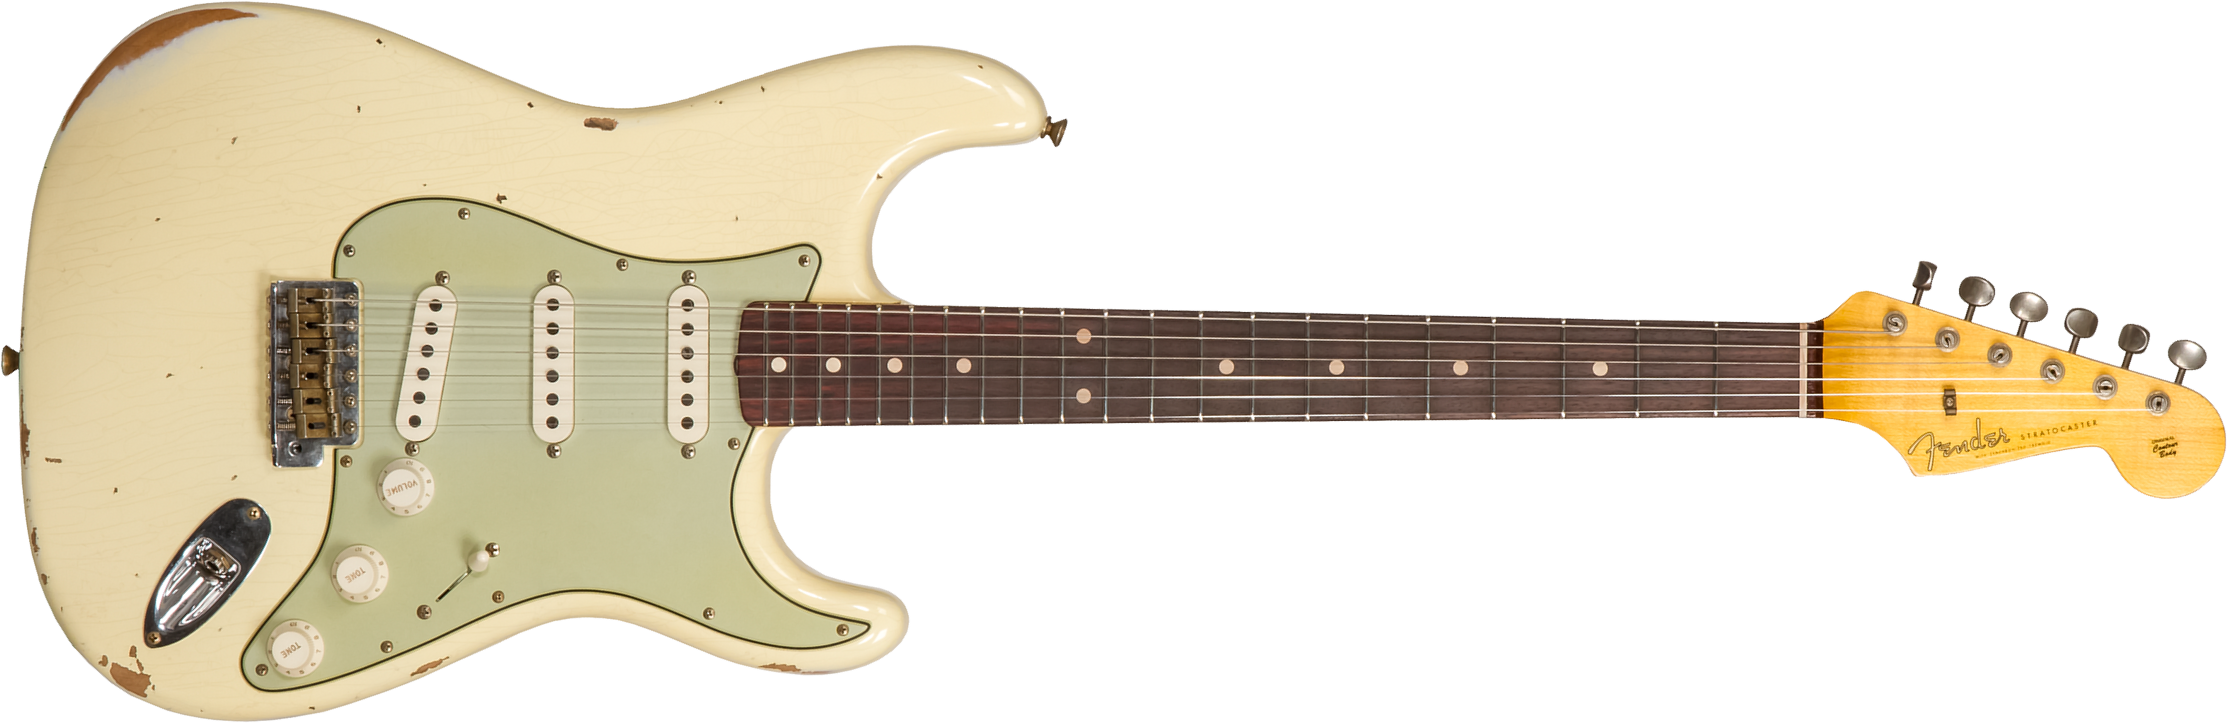 Fender Custom Shop Strat 1959 3s Trem Rw #r117393 - Relic Aged Vintage White - Guitarra eléctrica con forma de str. - Main picture